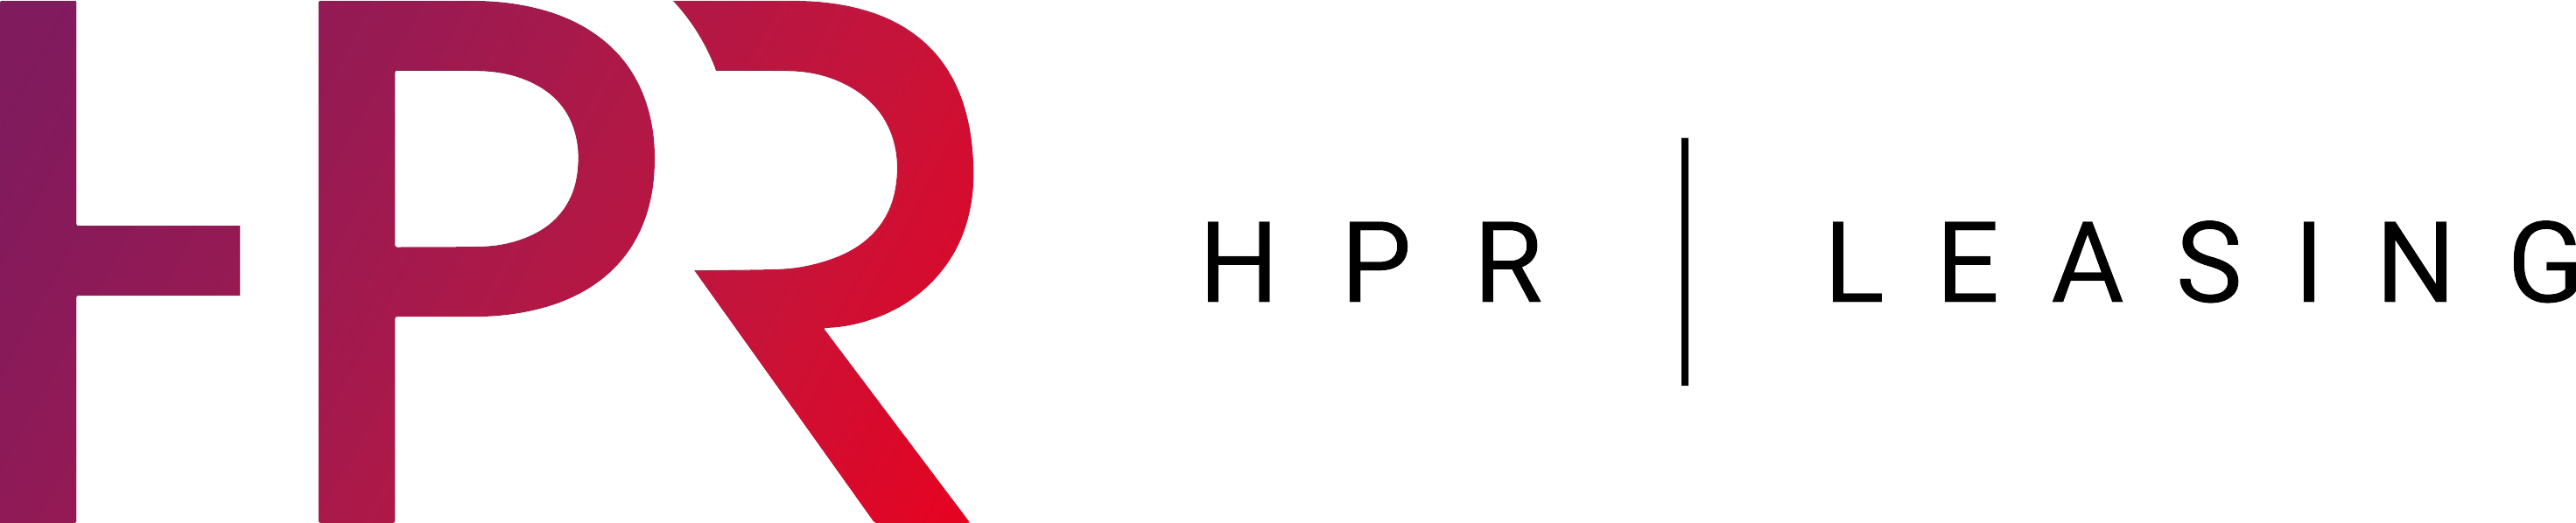 HPR-Leasing Hannover | Ihr flexibler Finanzierungspartner